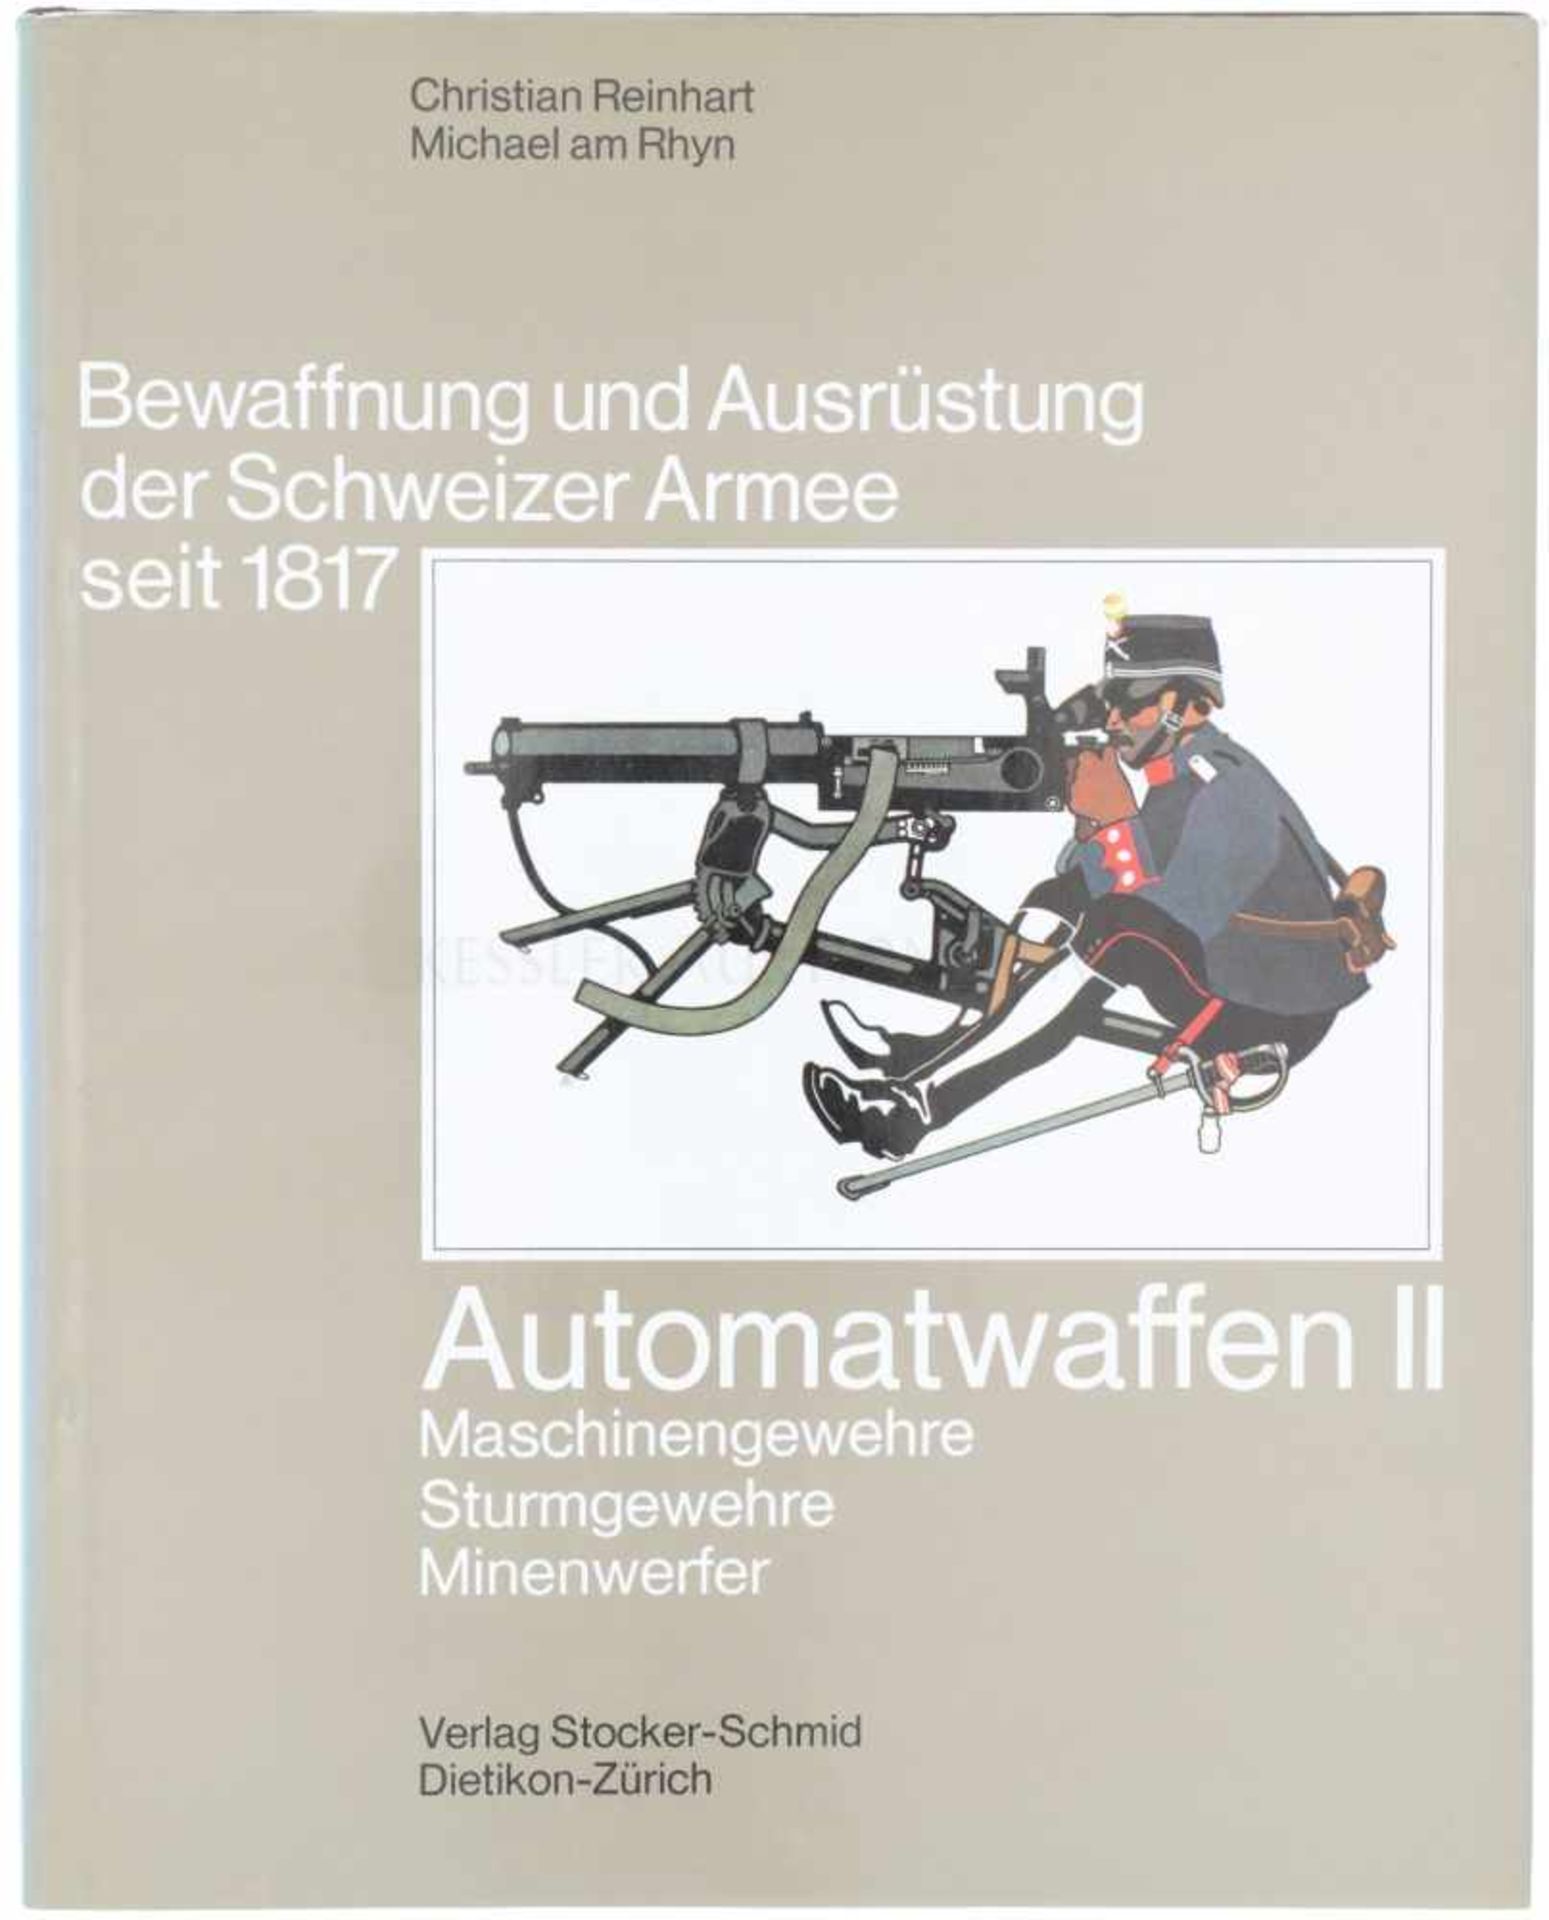 Bewaffnung und Ausrüstung der Schweizer Armee seit 1817, Automatwaffen II Band 14, Maschinengewehre,